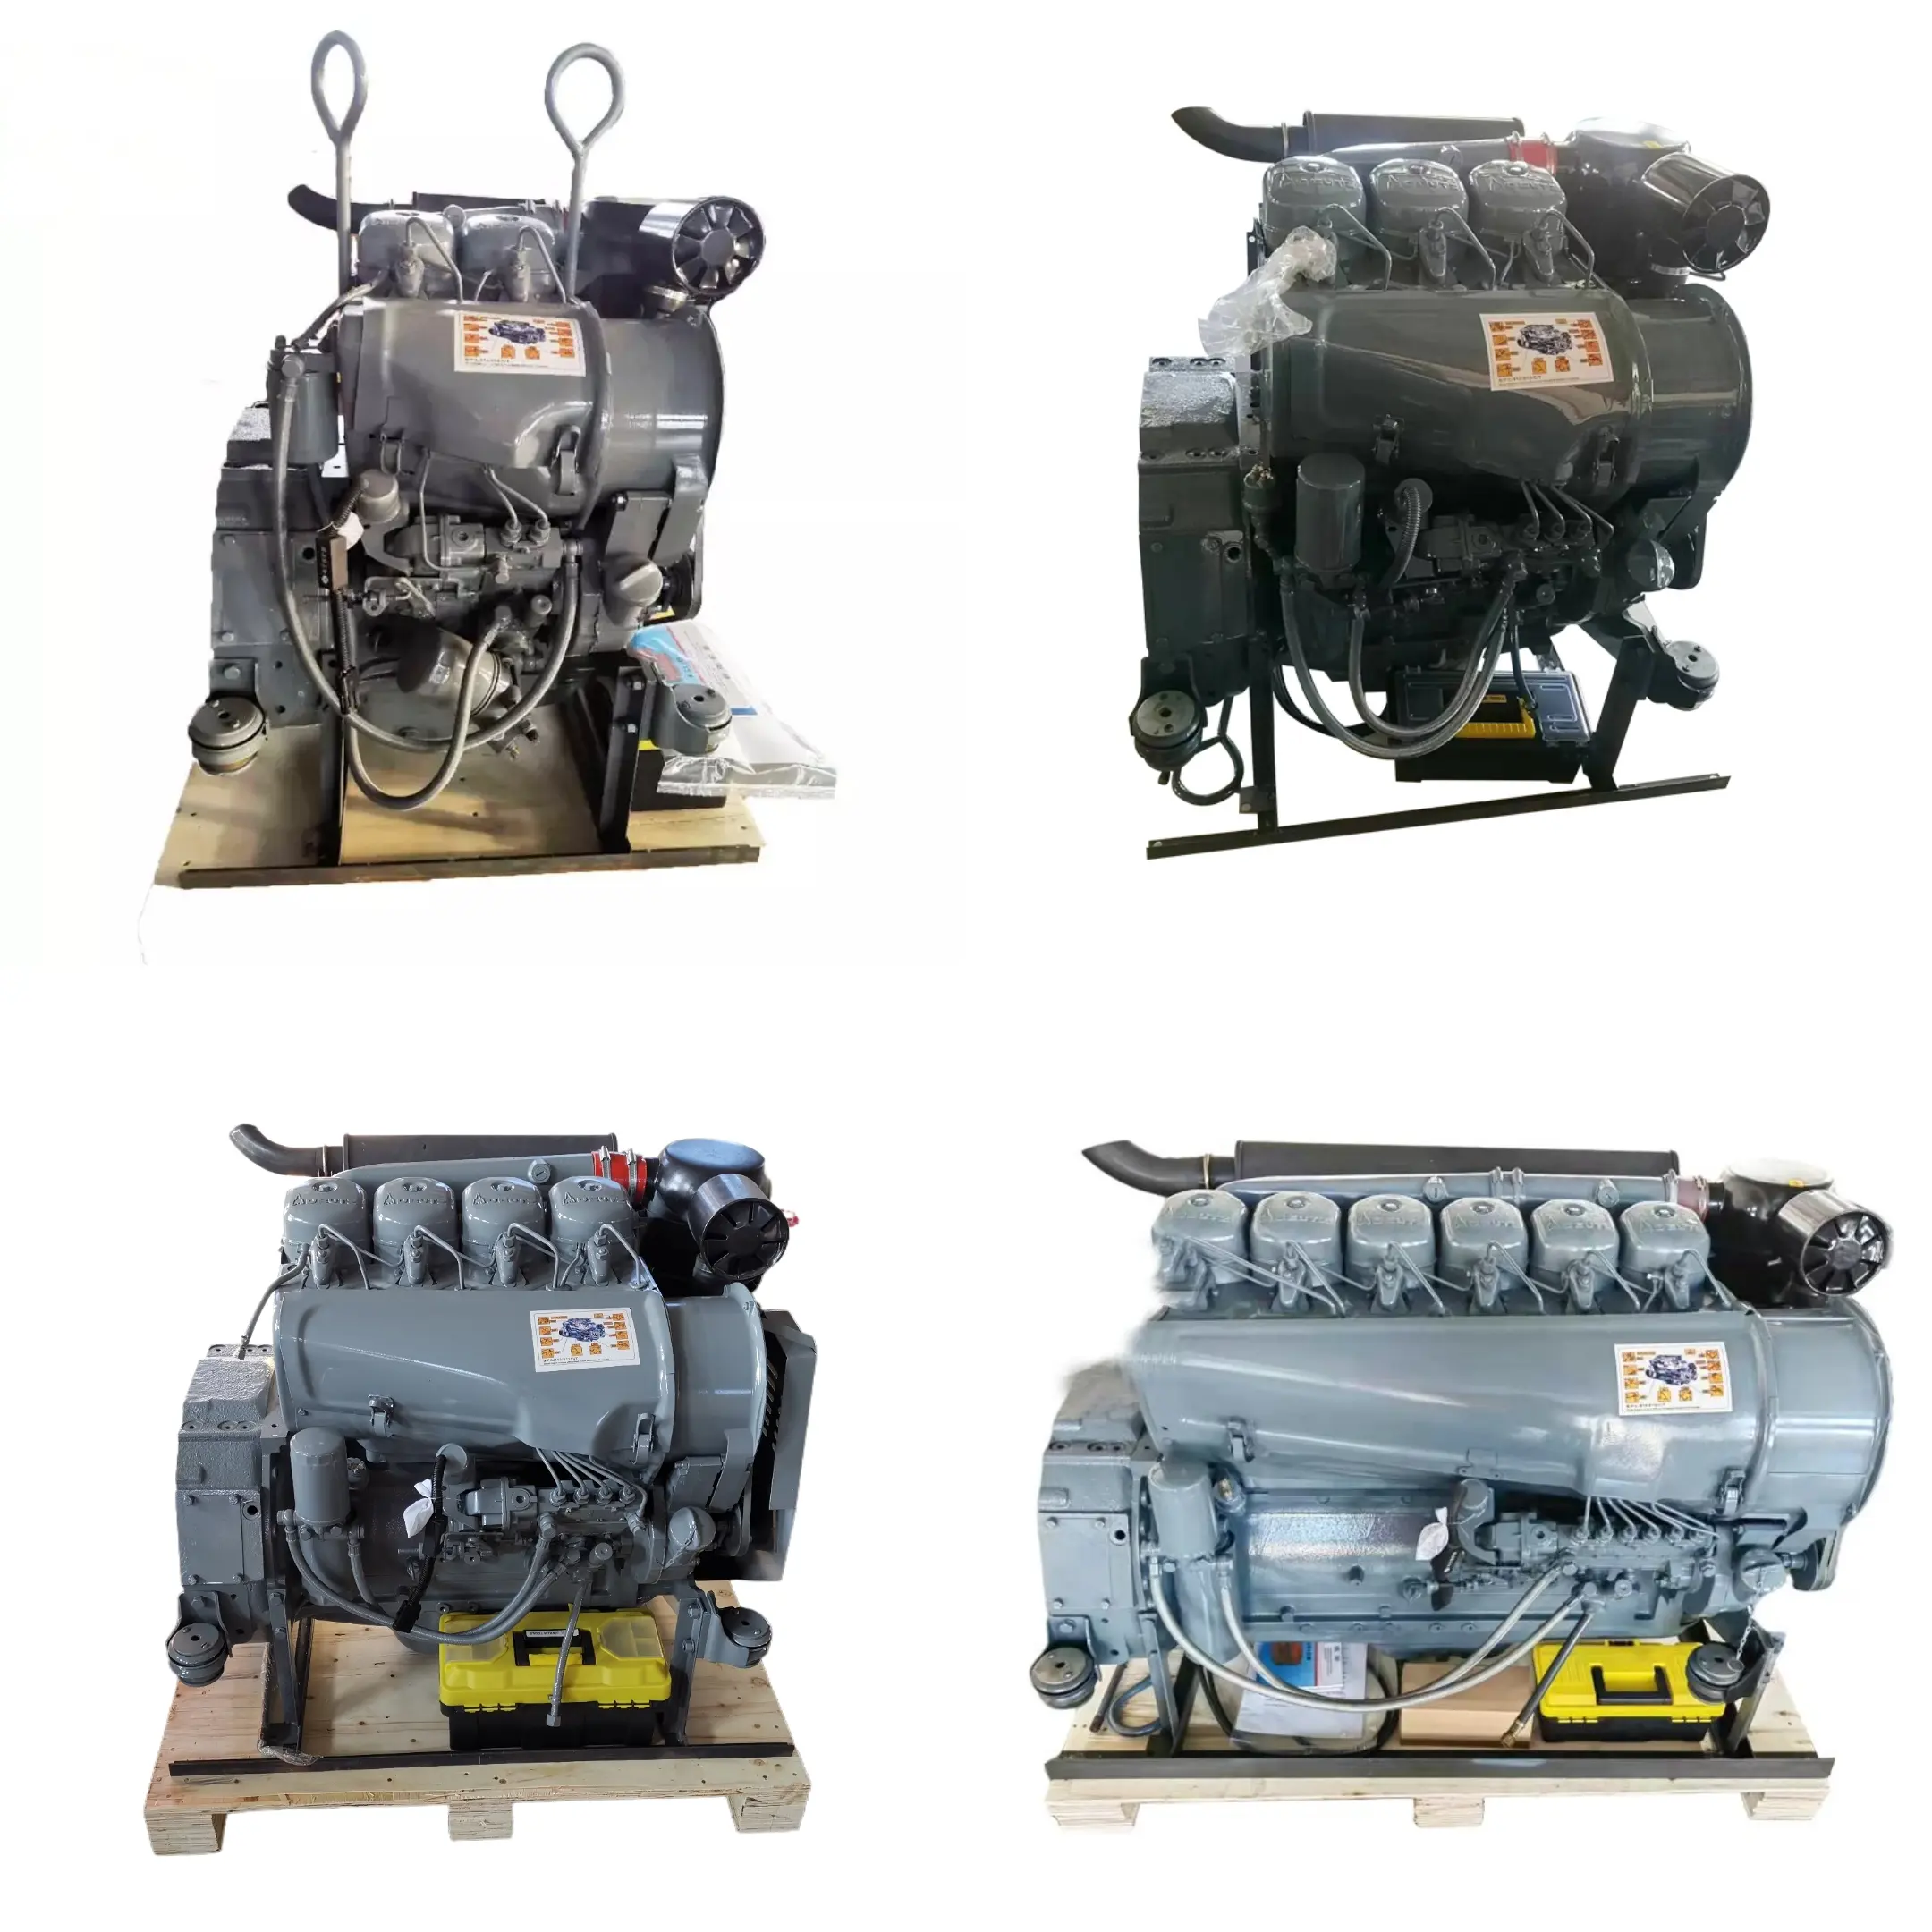 DEUTZ motores diesel de conjunto refrigerado a ar F2l912 F3l912 F4l912 F6l912 F4l913 F6l913 BF4L913 BF6L913 BF6L913C para deutz